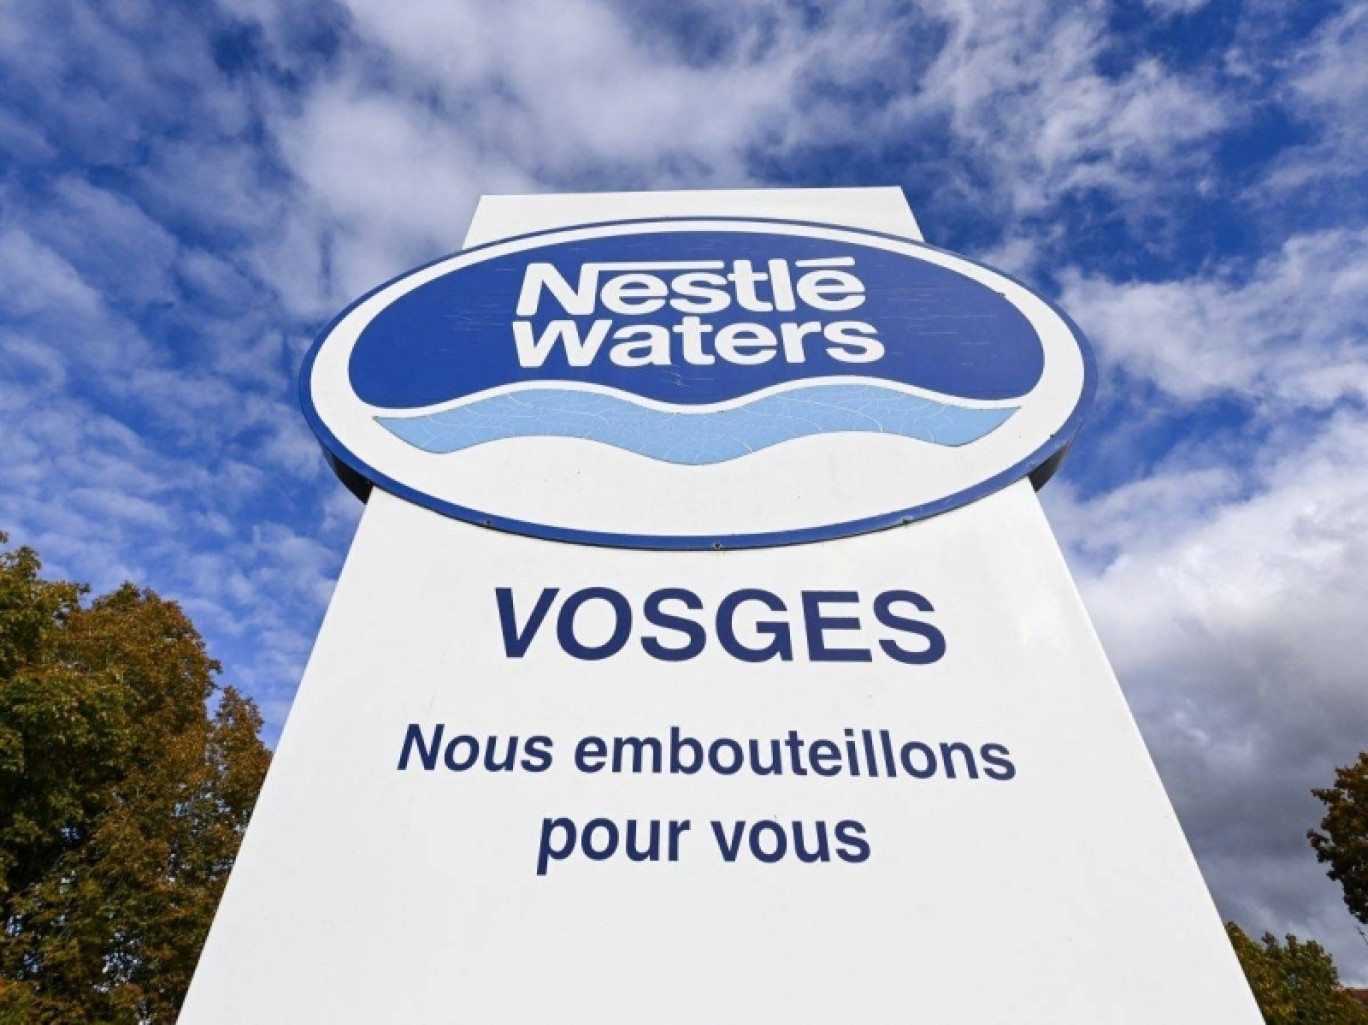 © Nestlé waters 